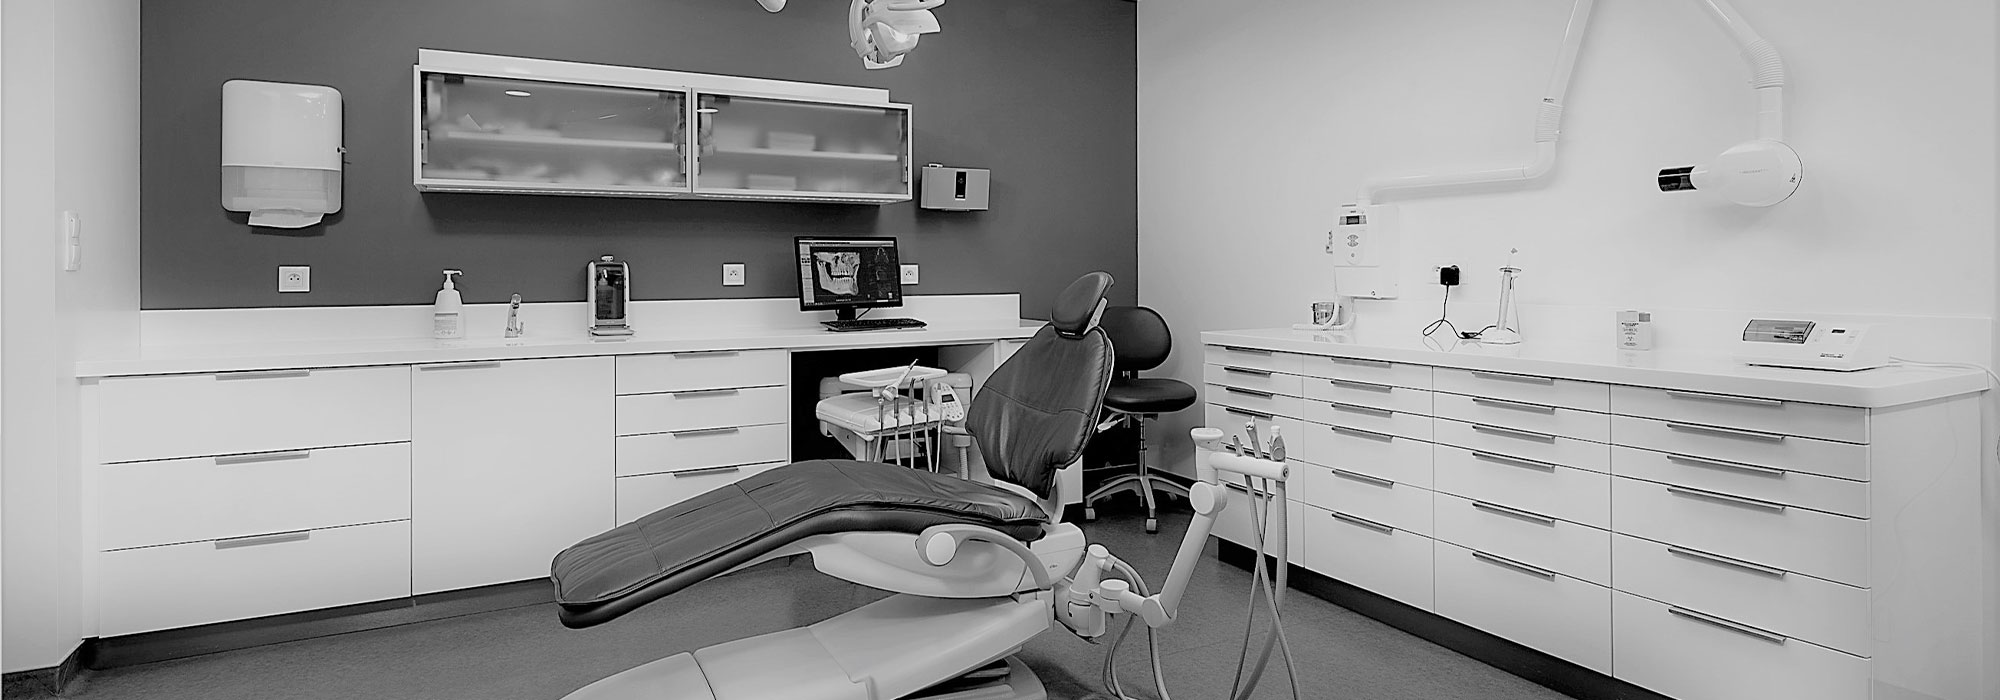 Salle de soins - Cabinet dentaire du Dr Pascal Guillemin - Gouesnou Finistère